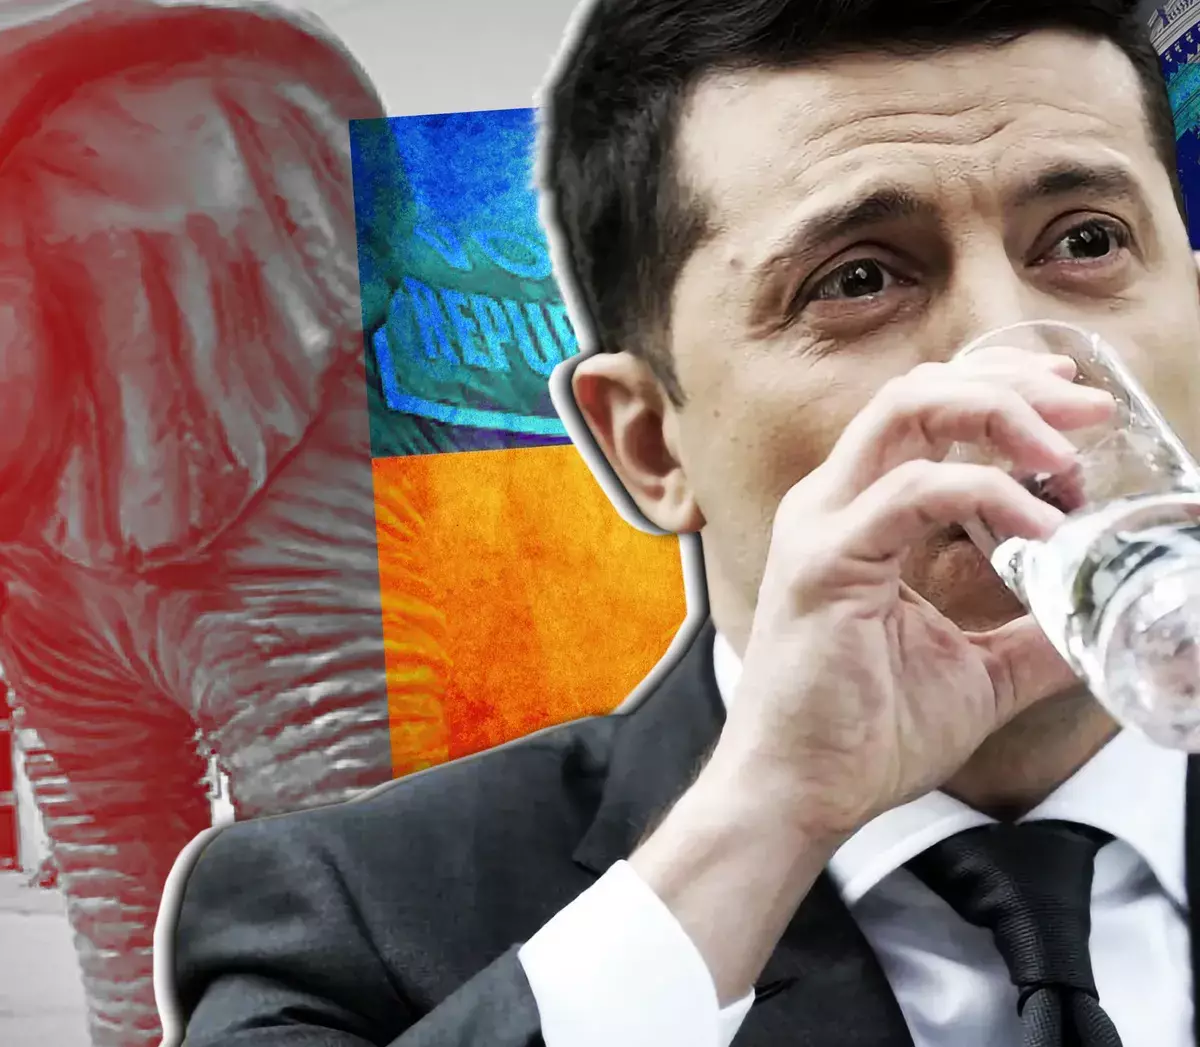 Республиканцы готовы махнуть рукой на Украину после выборов